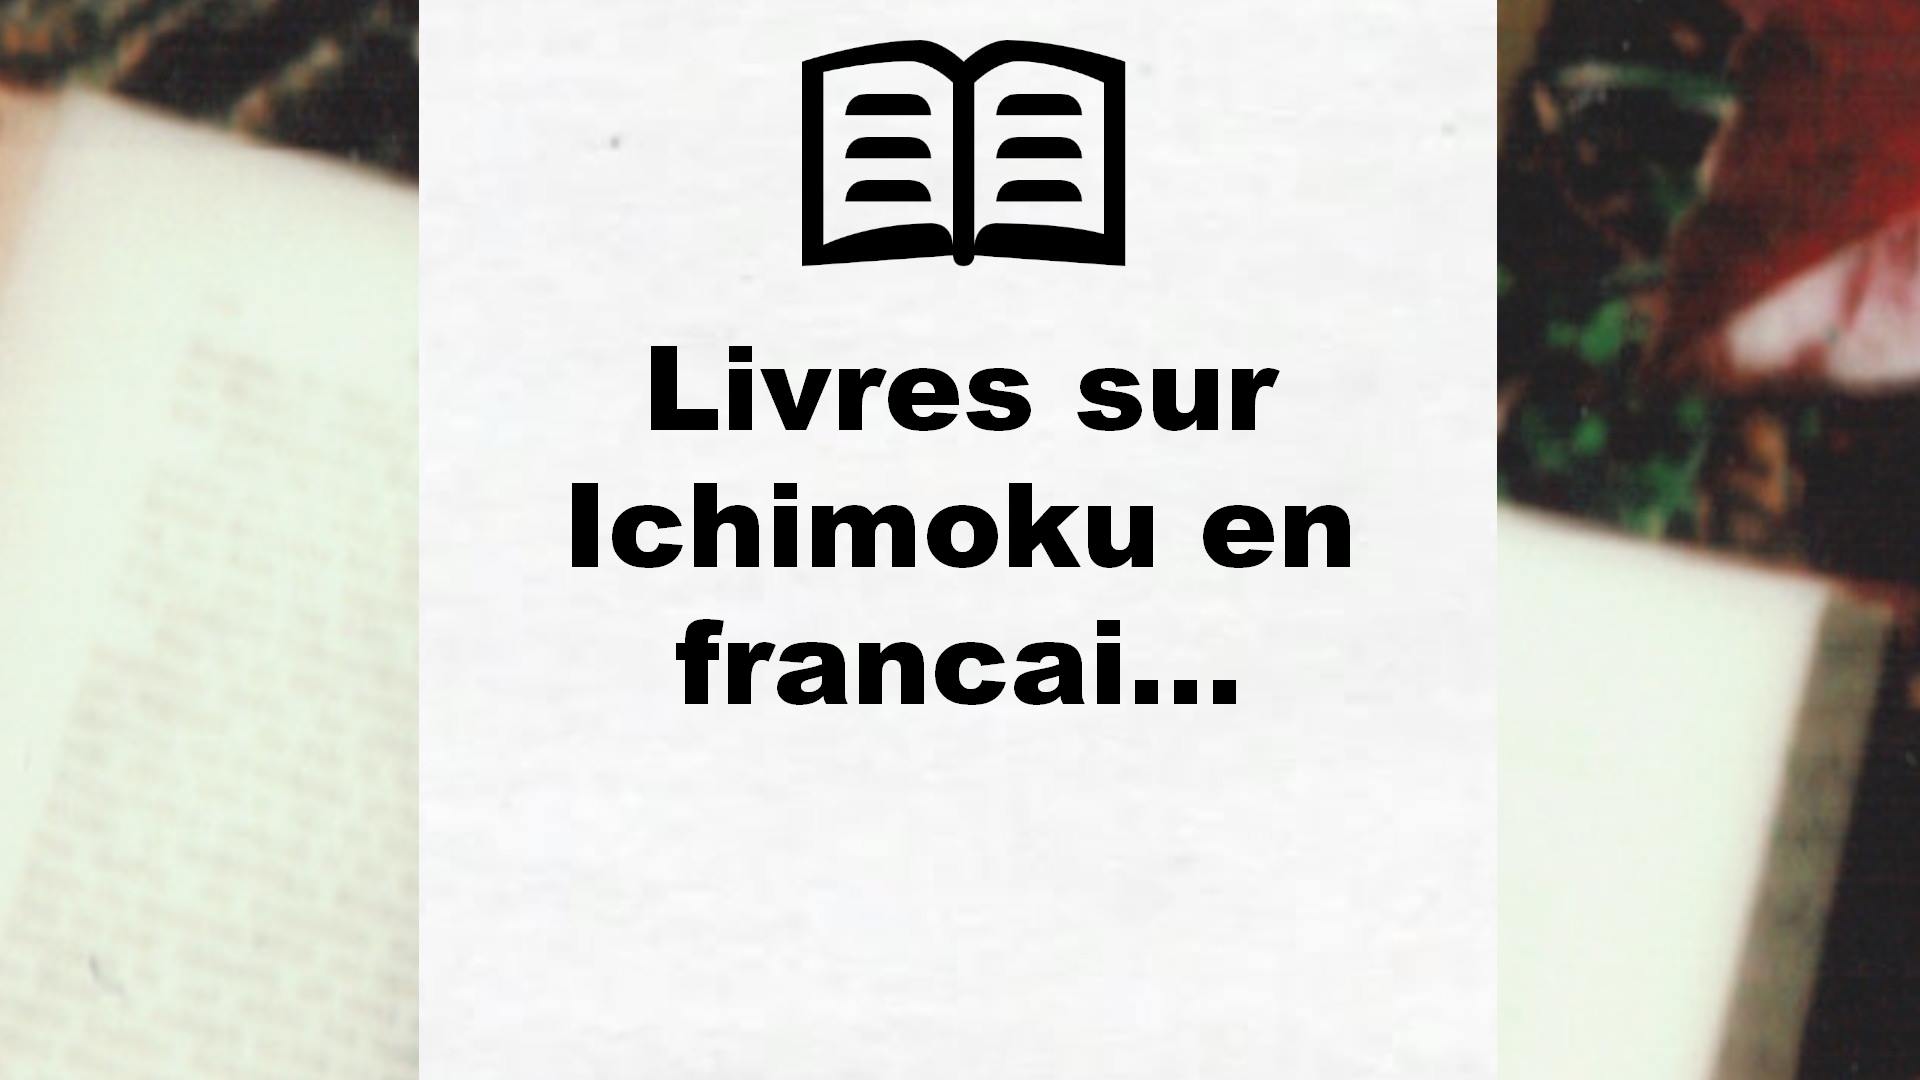 Livres sur Ichimoku en francais